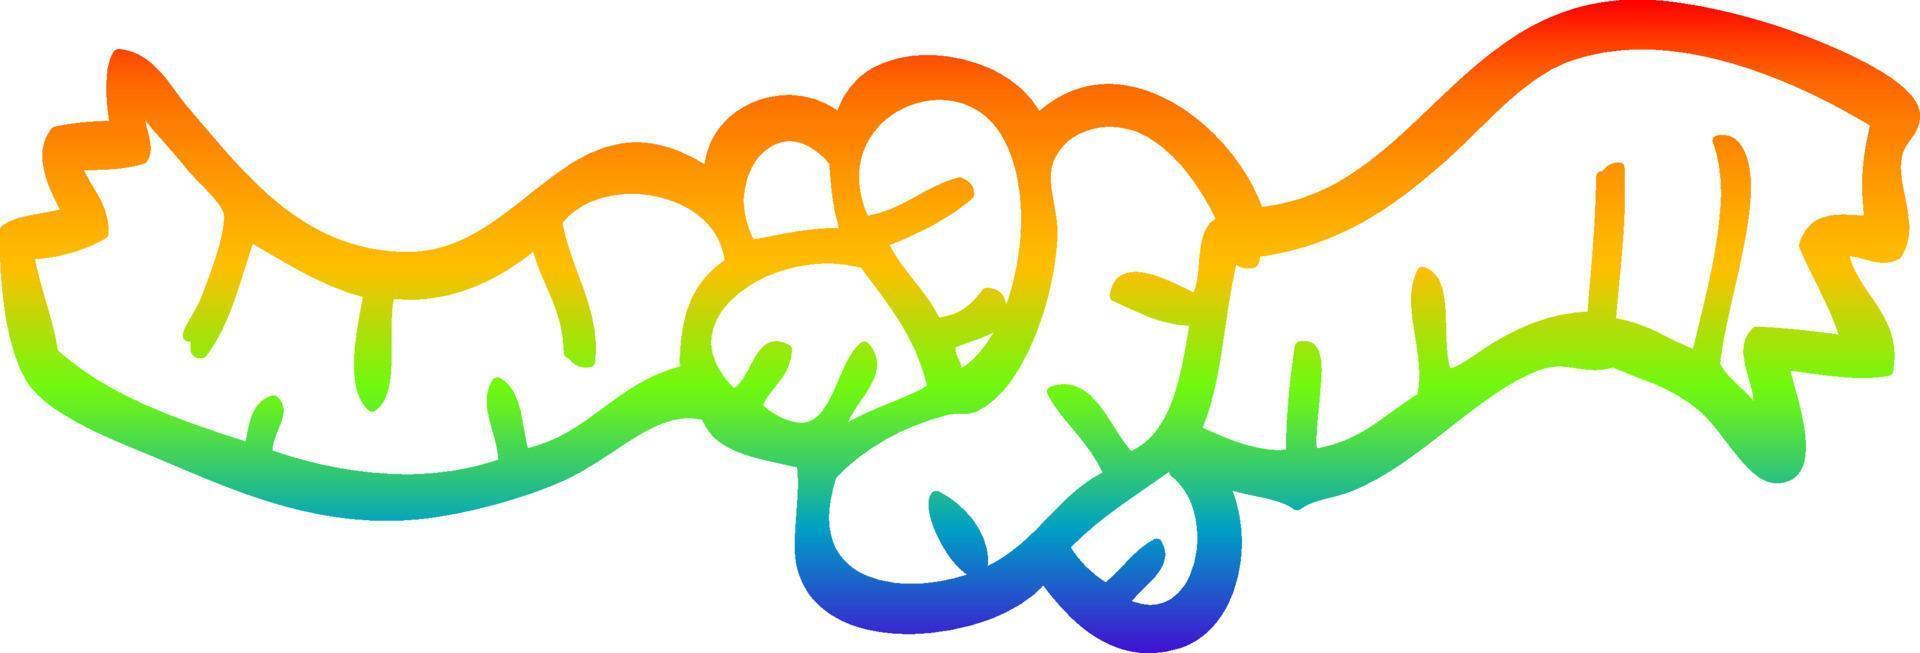 arco iris gradiente línea dibujo dibujos animados cuerda nudo vector